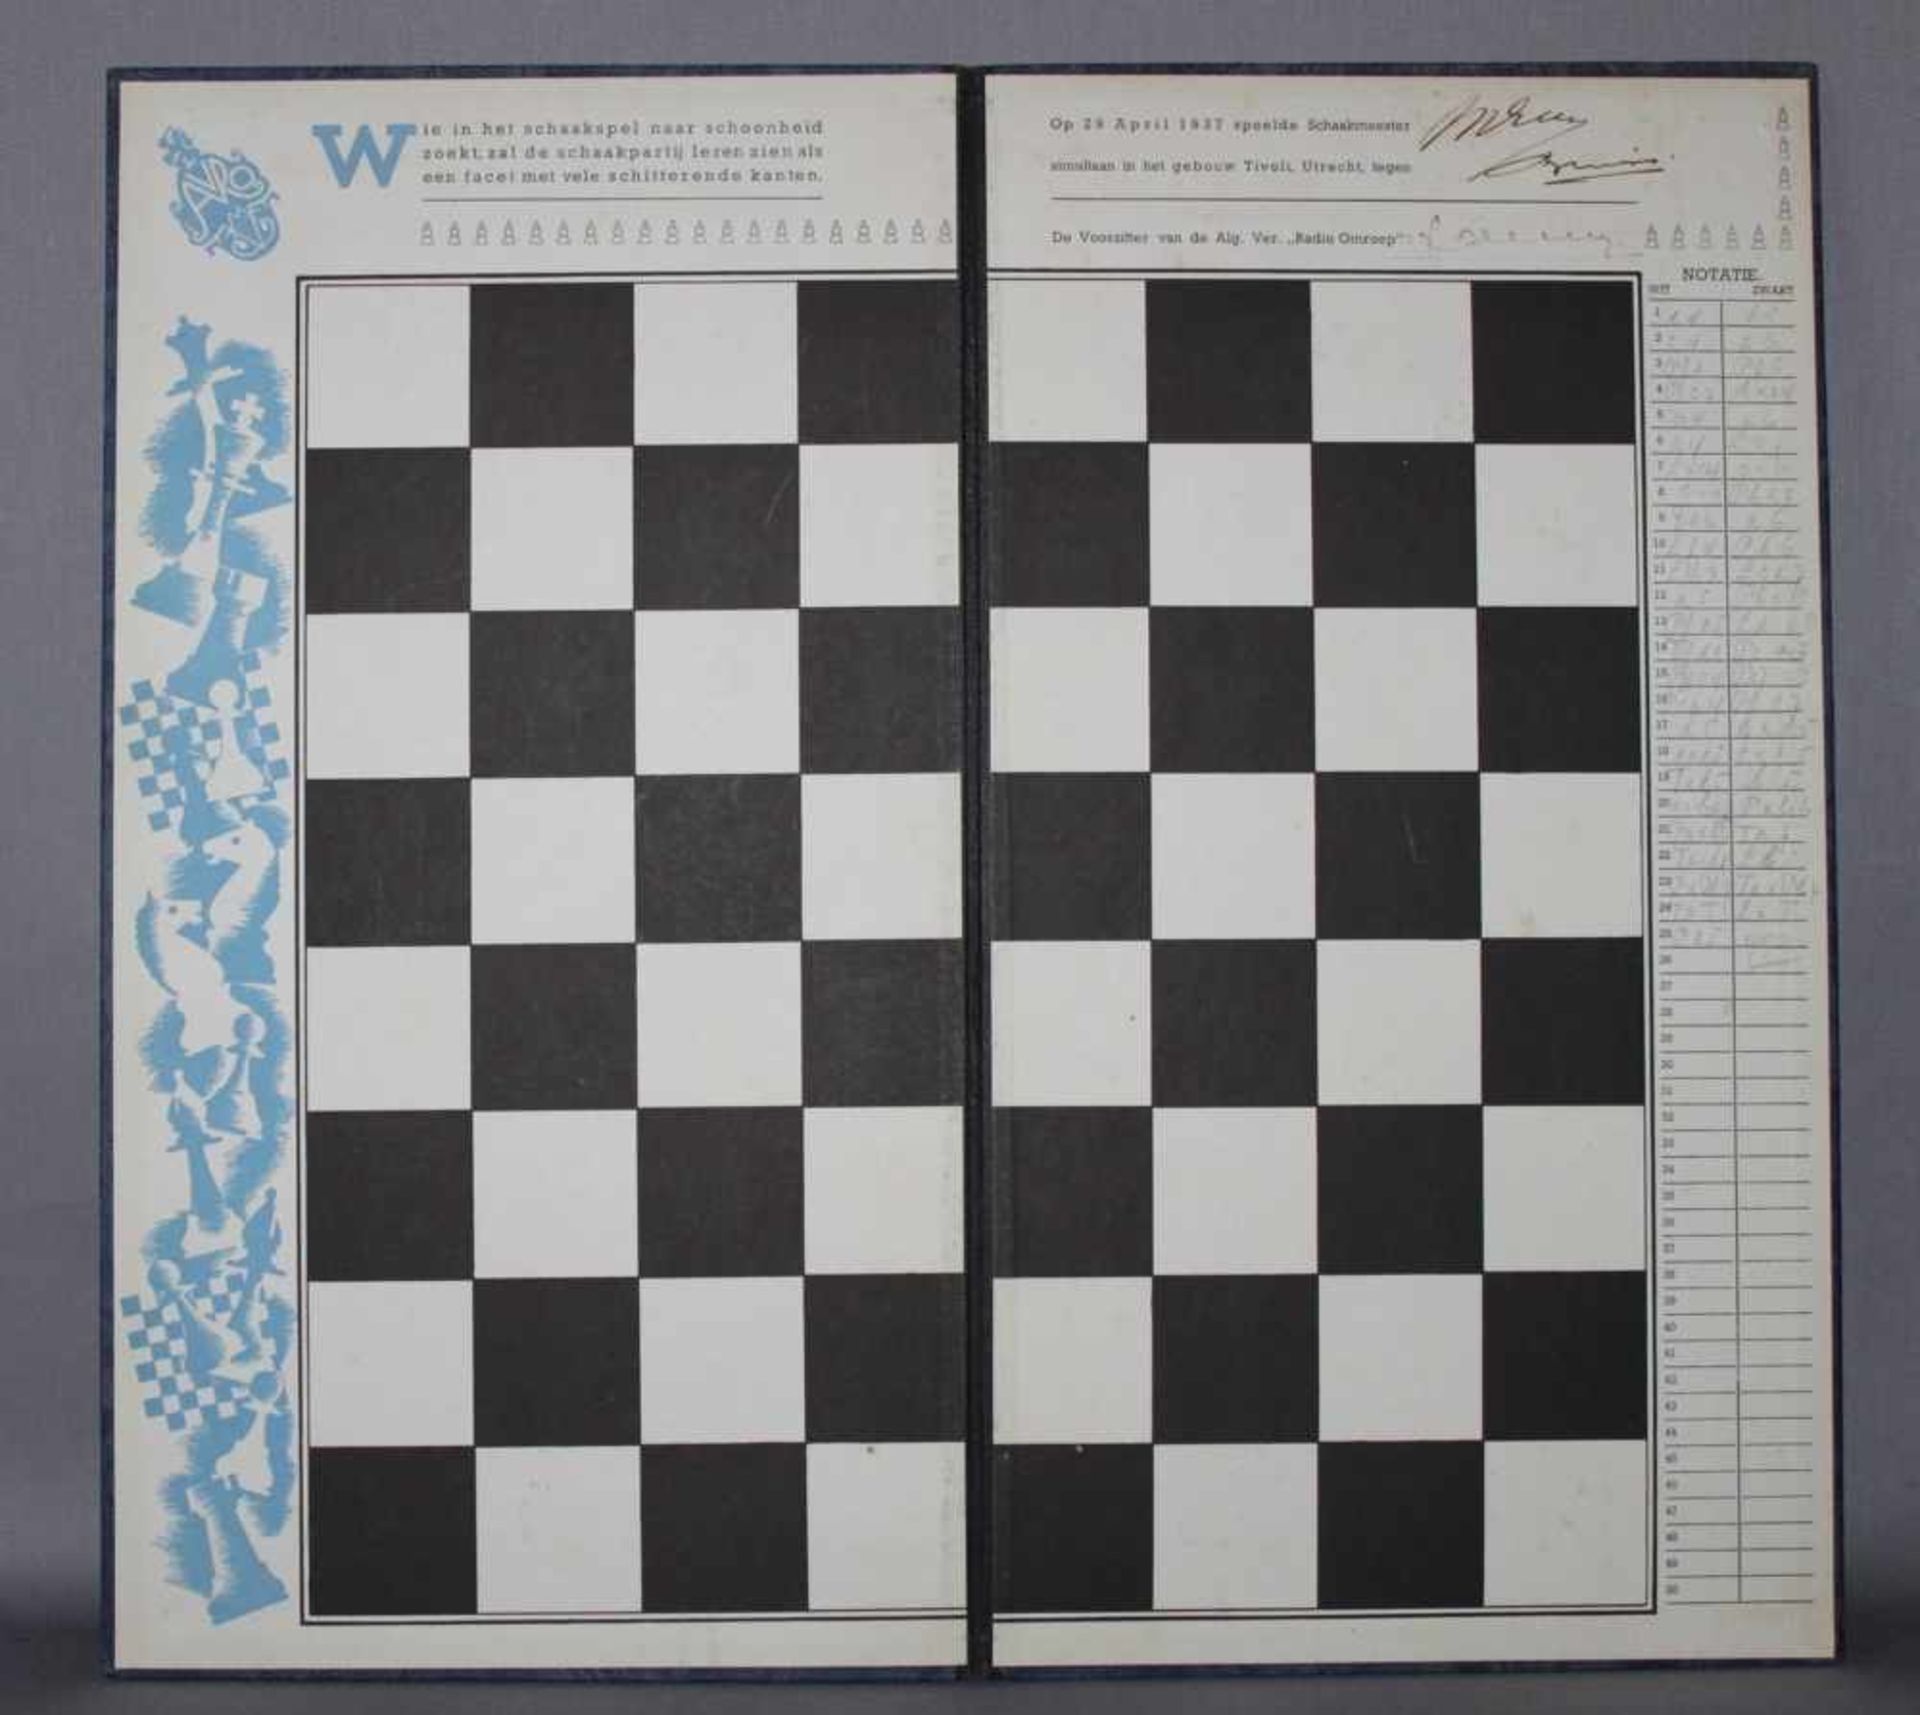 Euwe, Max.Schachbrett aus Pappe vom AVRO - Simultanwettkampf 1937 mit eigenhändiger Unterschrift von